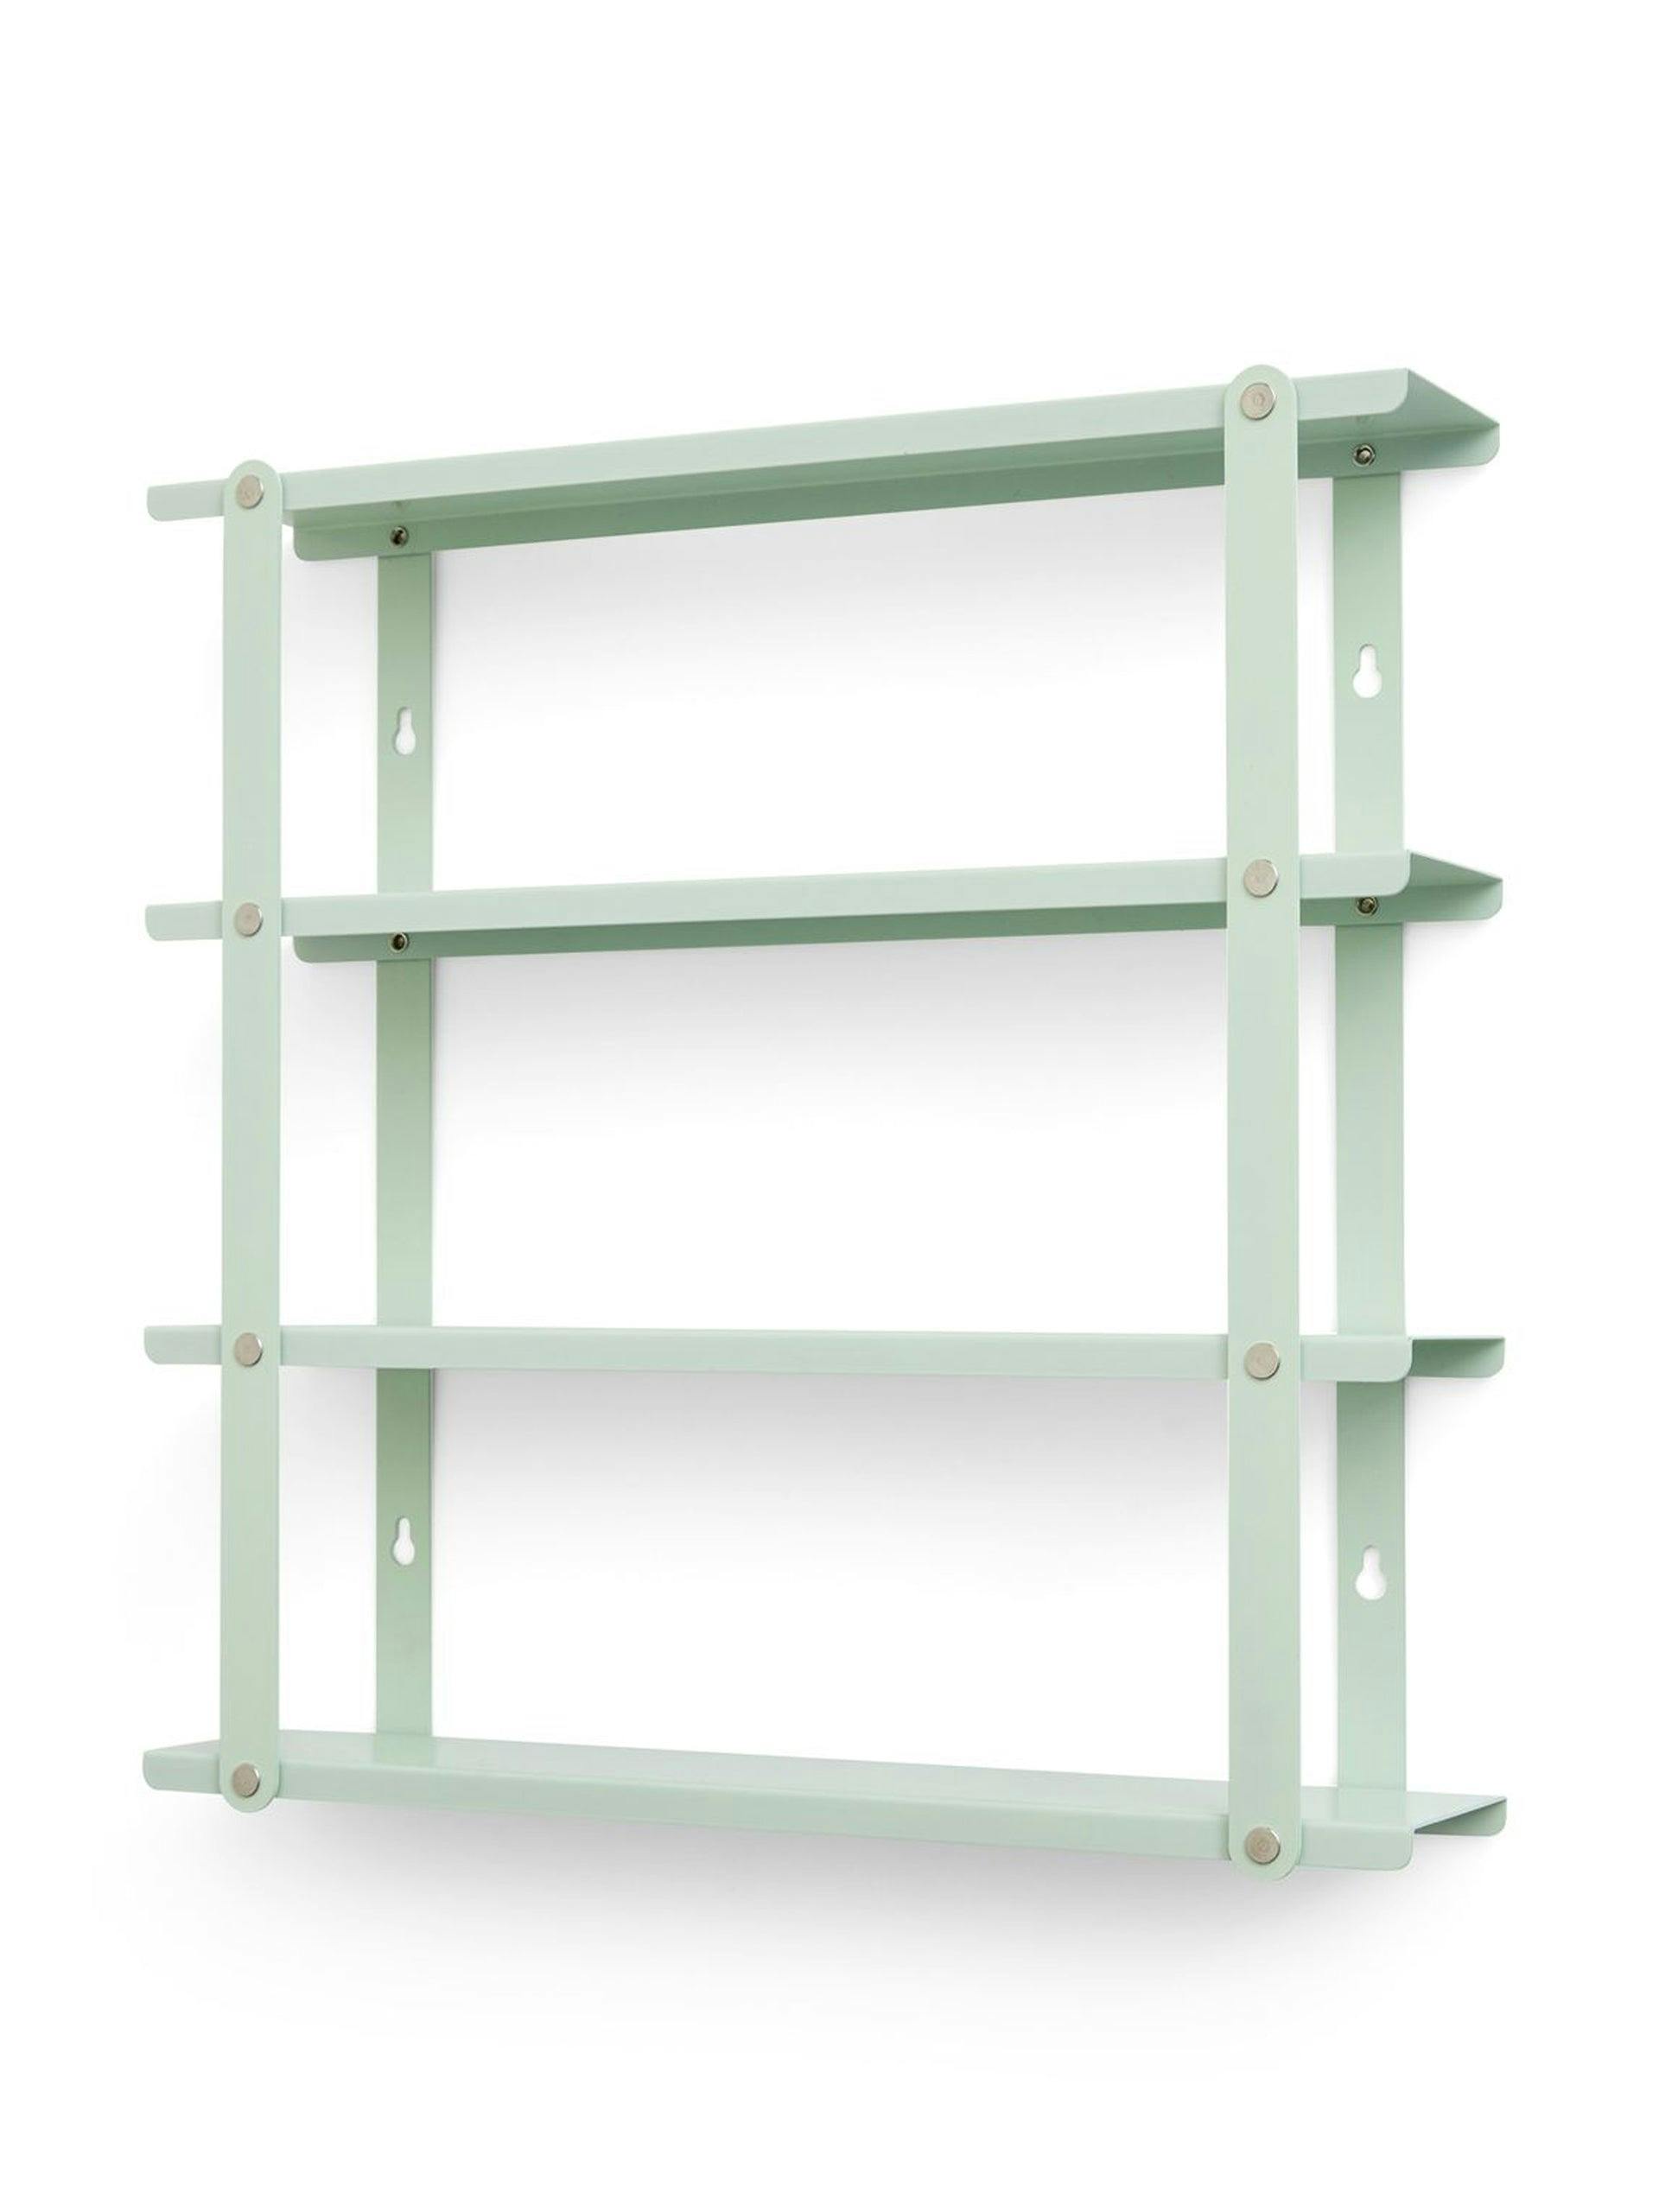 Small steel shelf